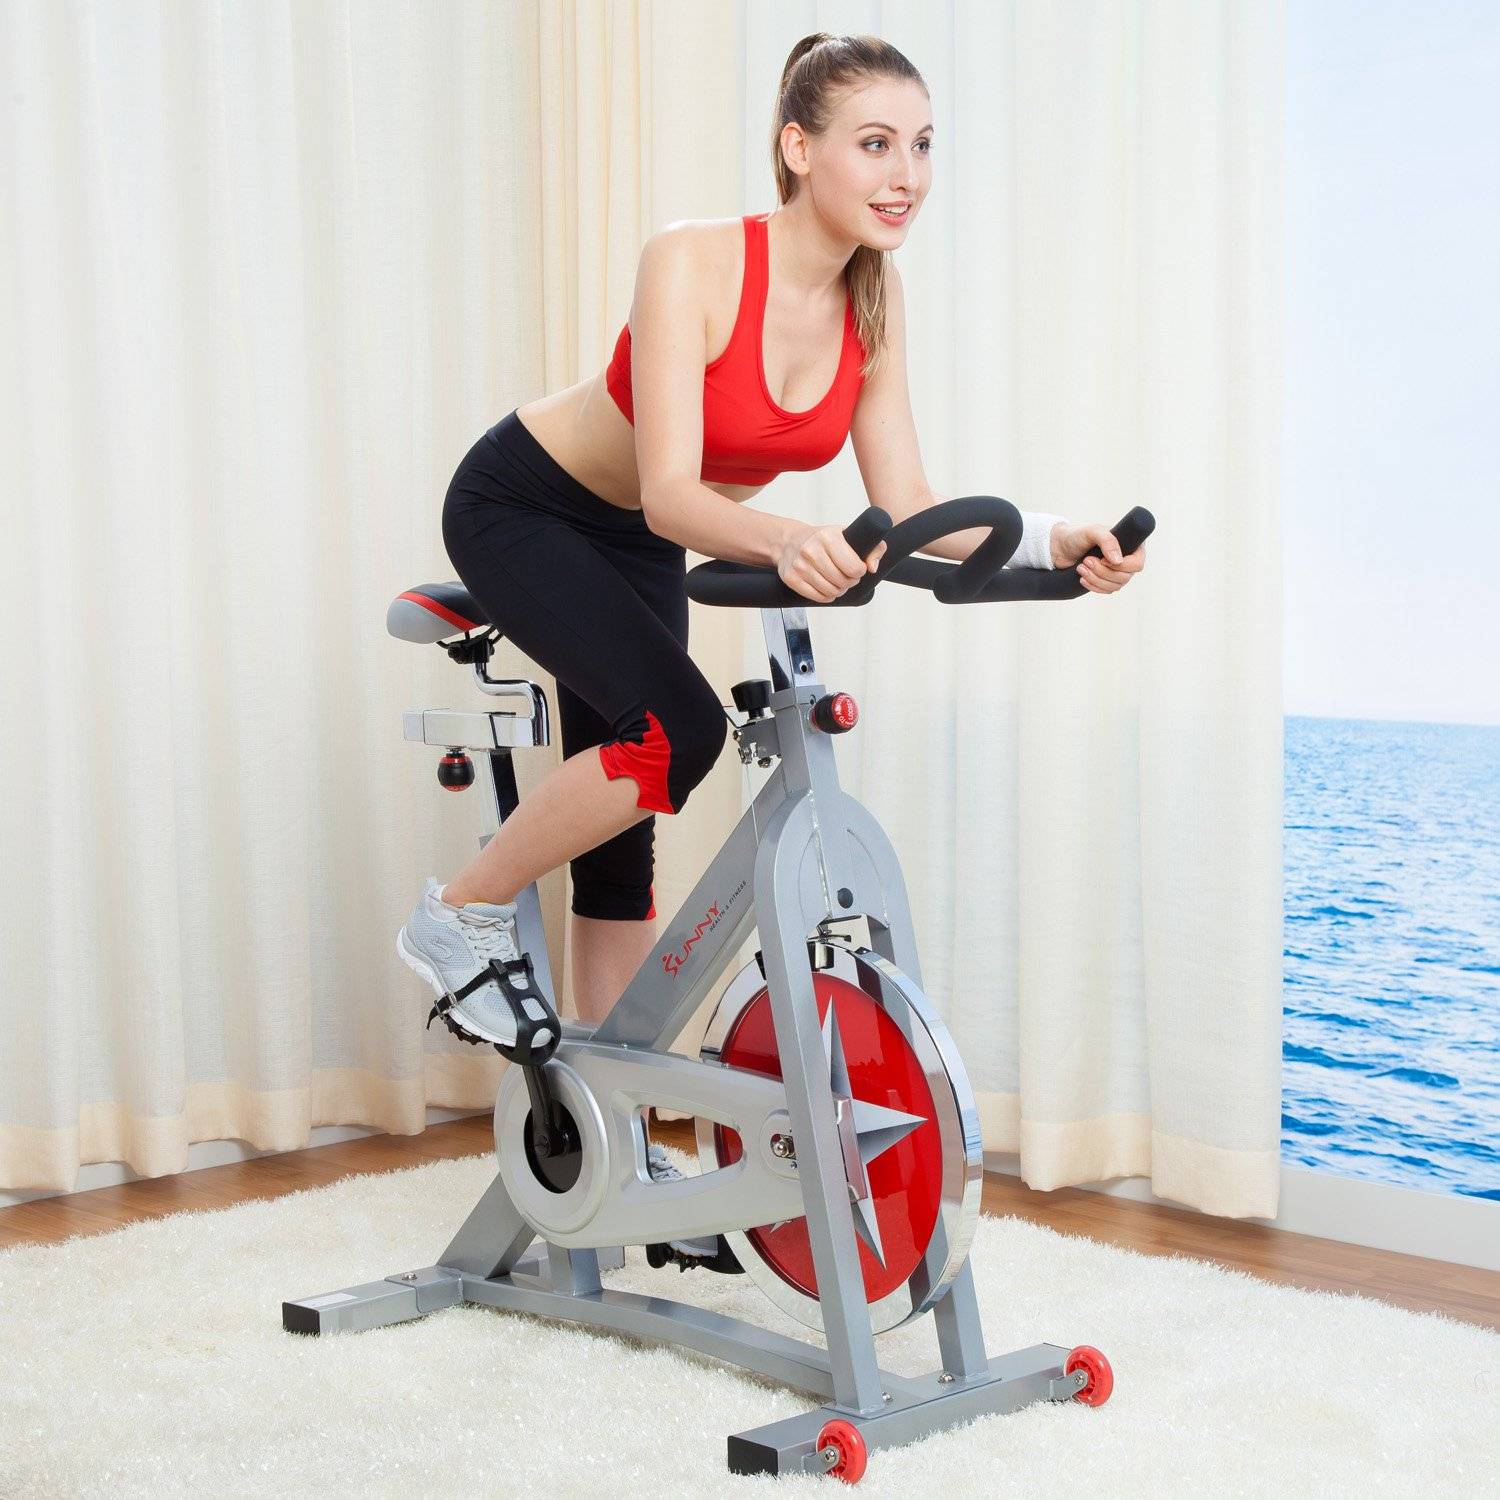 О занятиях на велотренажерах для похудения: как правильно заниматься каждый день